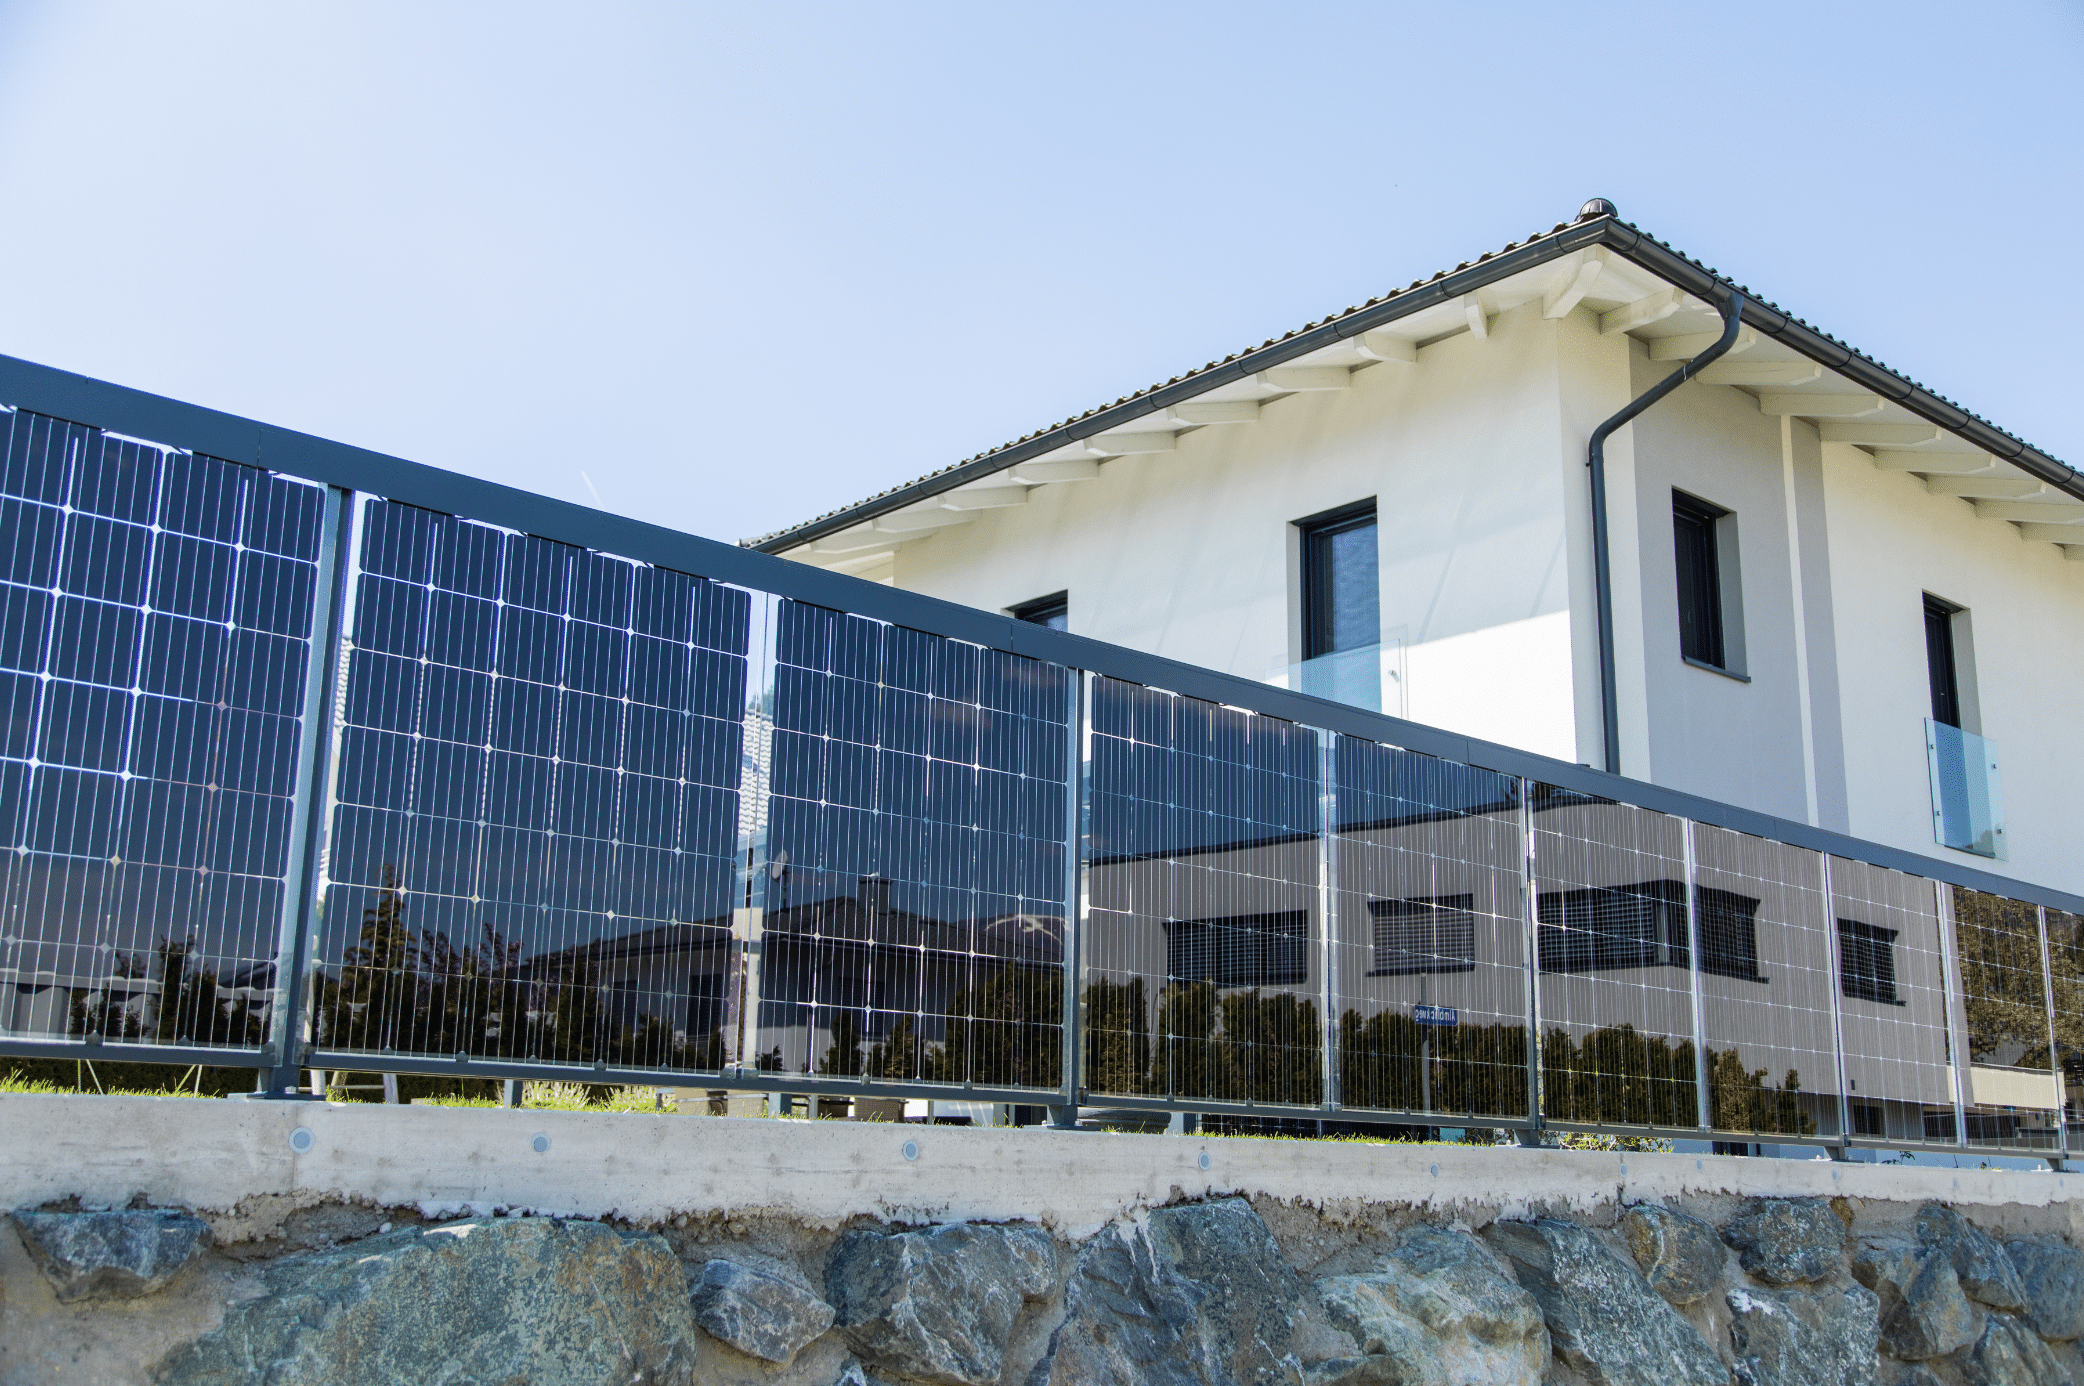 KIOTO Solar - eine Marke von Sonnenkraft zeigt erneuerbare und nachhaltige Energie in Form von Photovoltaikpaneelen auf einem Zaun.